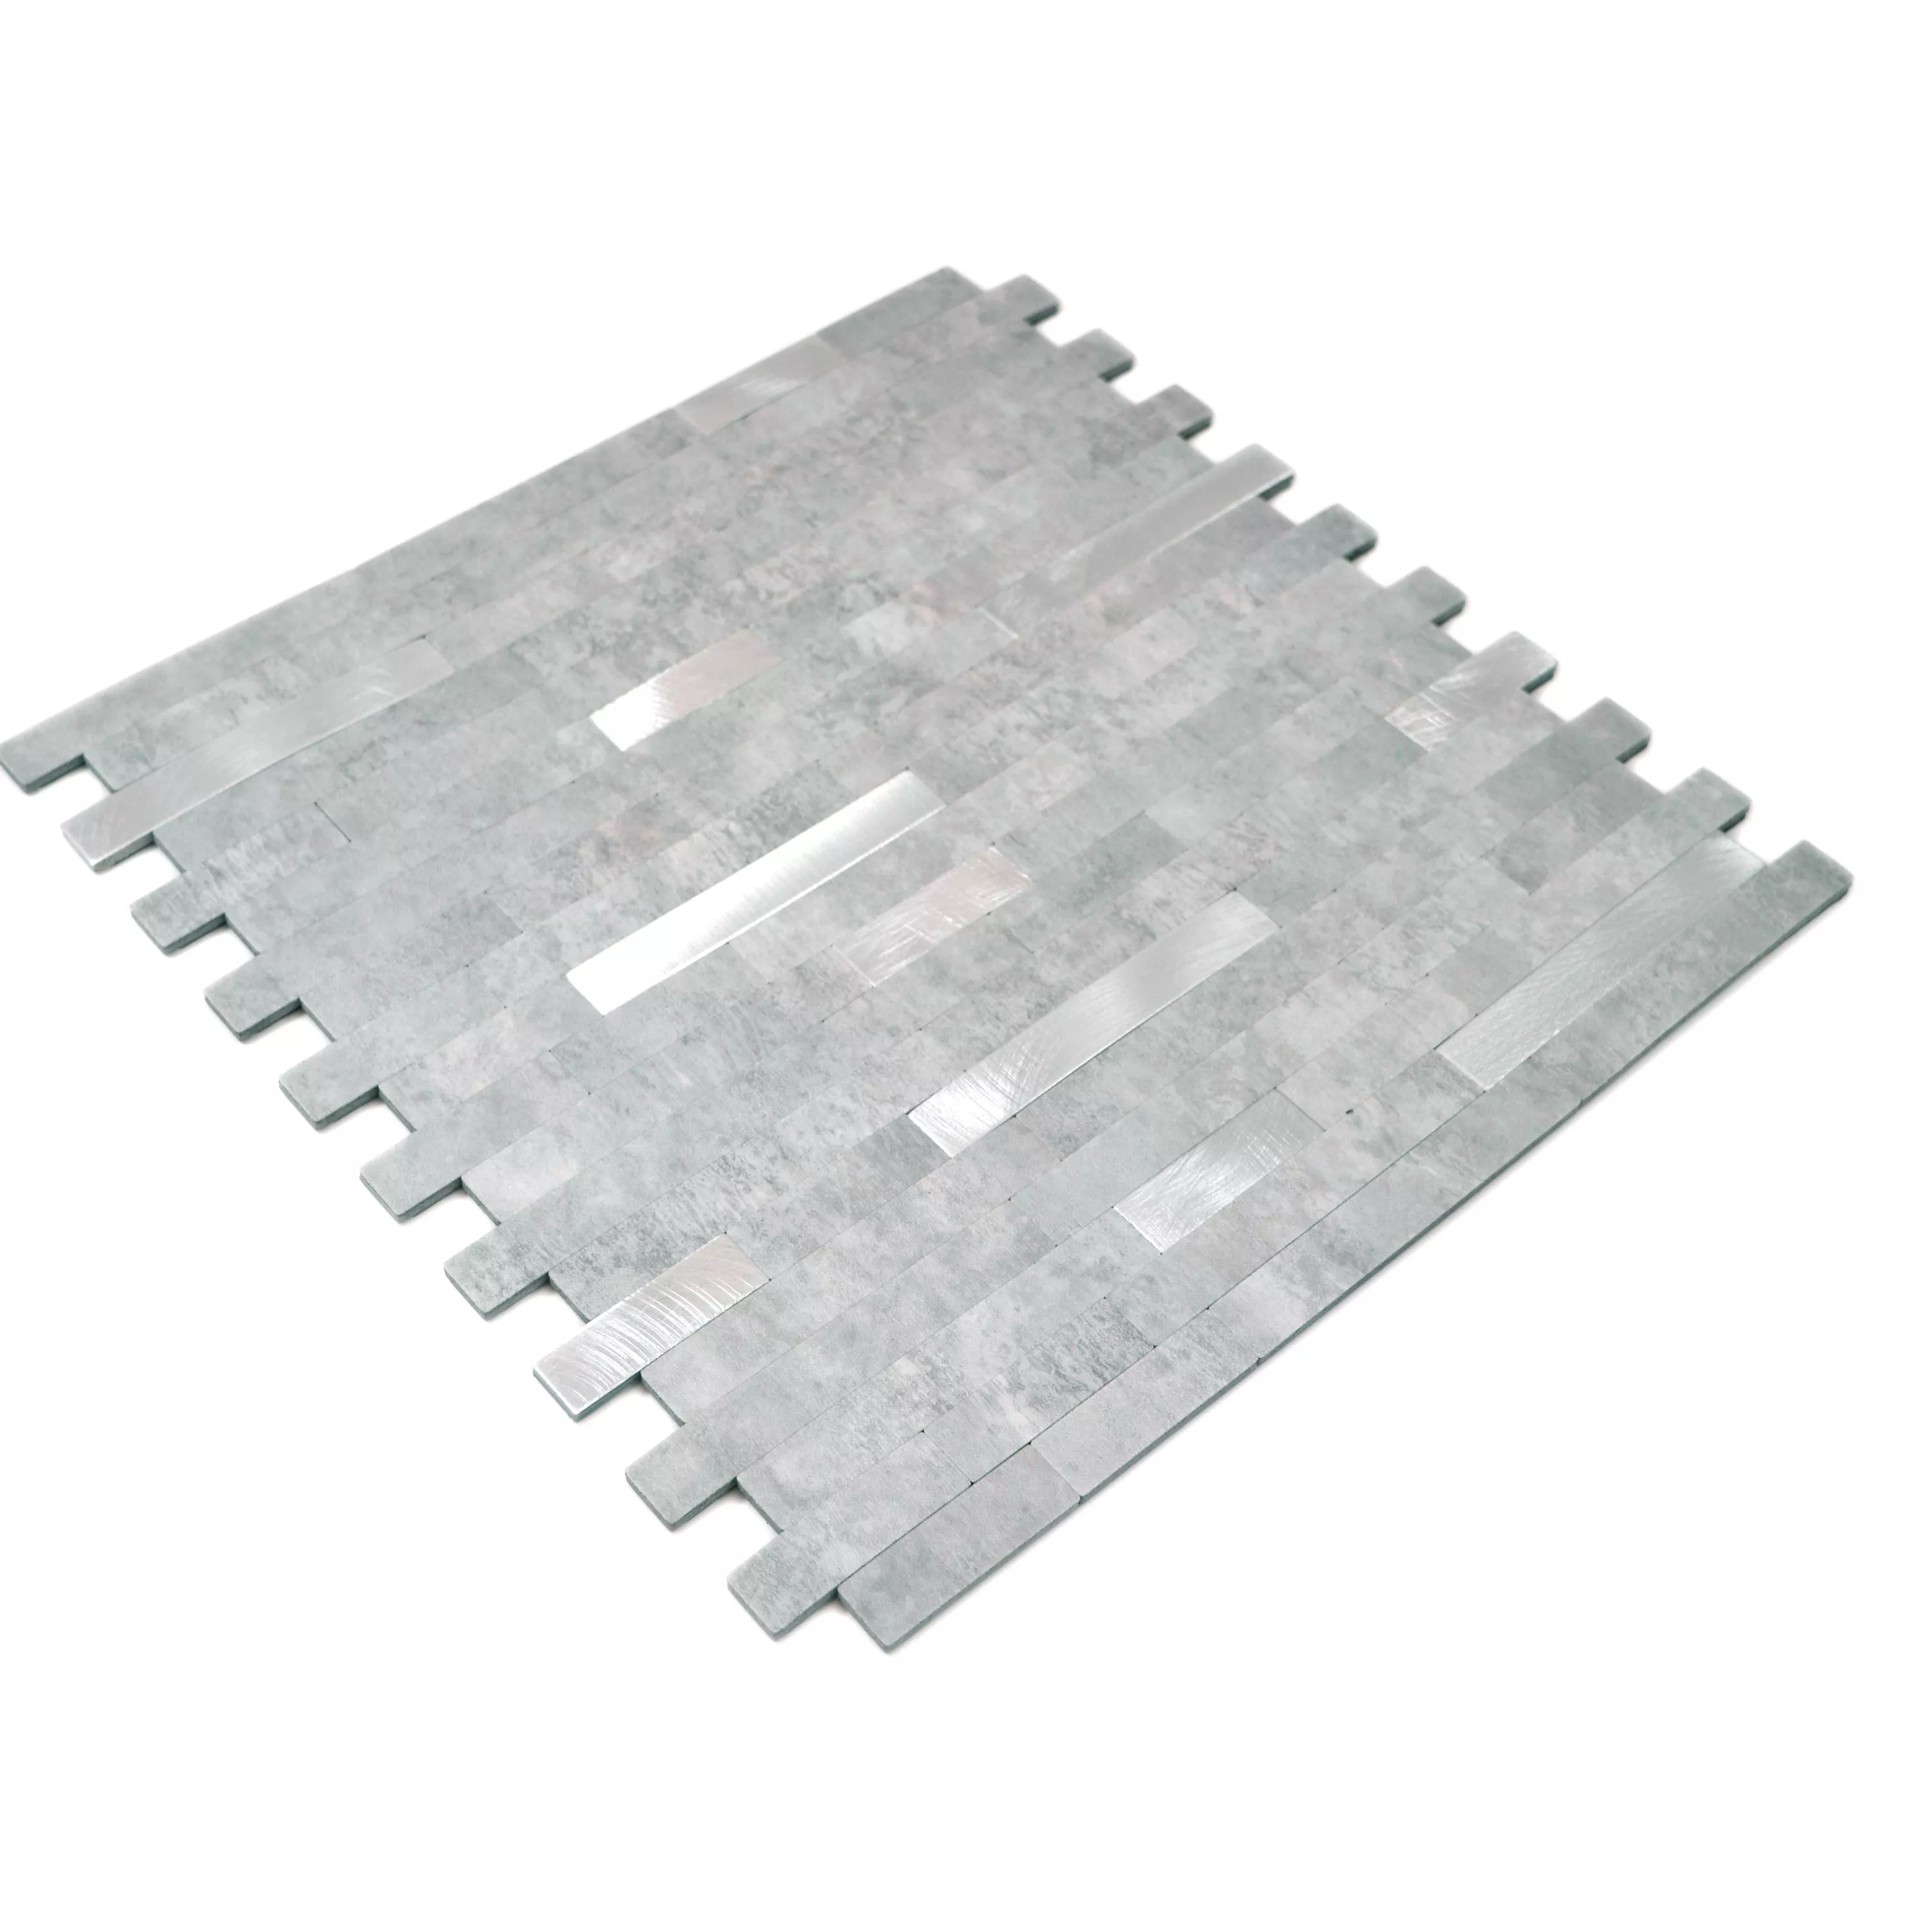 Muster von Vinyl Mosaikfliesen Maywald Selbstklebend Grau Silber